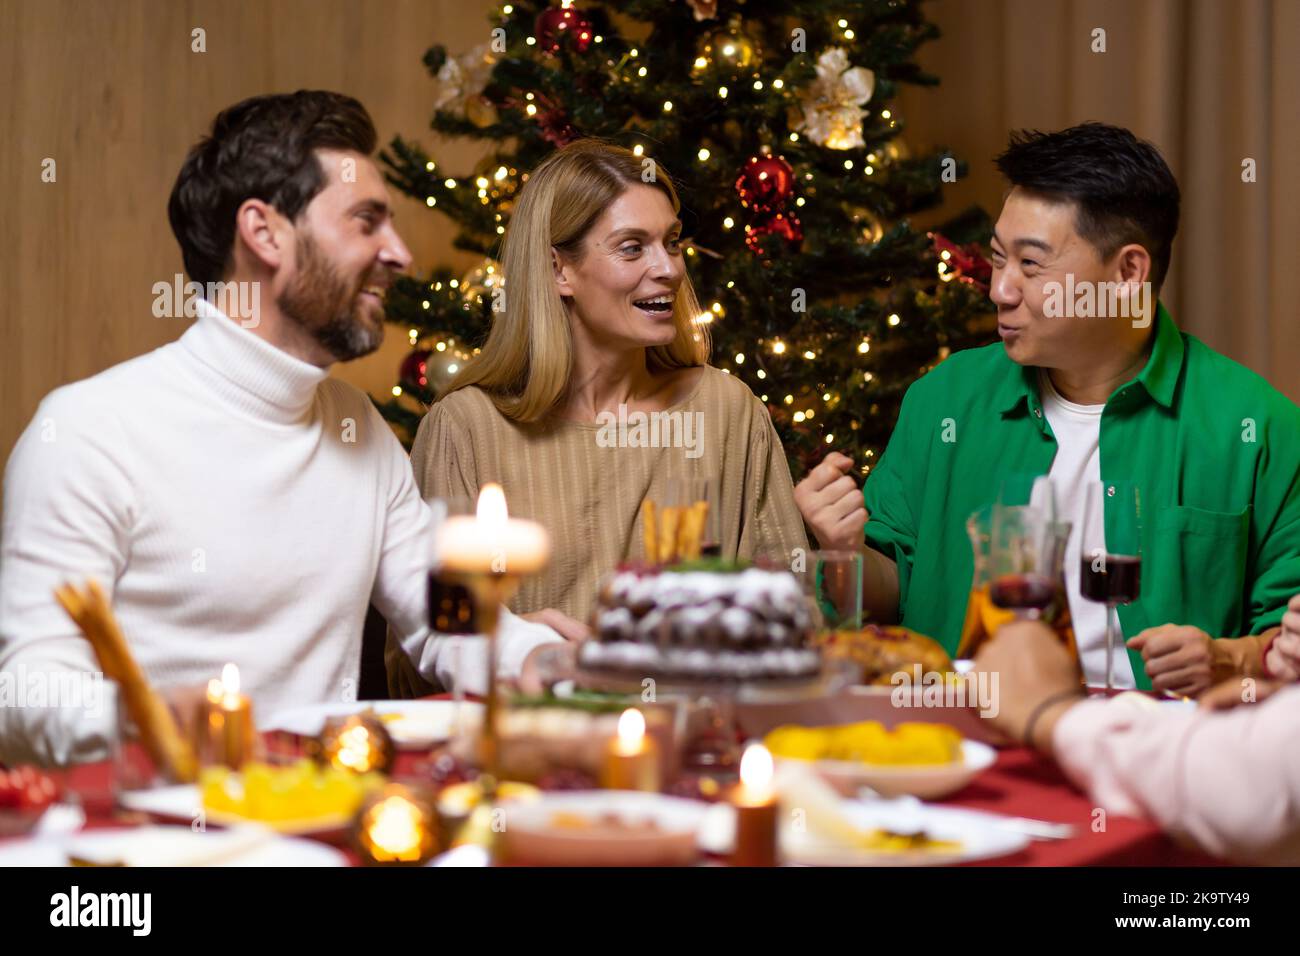 Les amis fêtent la veille de Noël ou le jour de l'an ensemble assis à la table. Dégustez un dîner de noël composé de plusieurs groupes ethniques. Des gens joyeux et joyeux. Banque D'Images